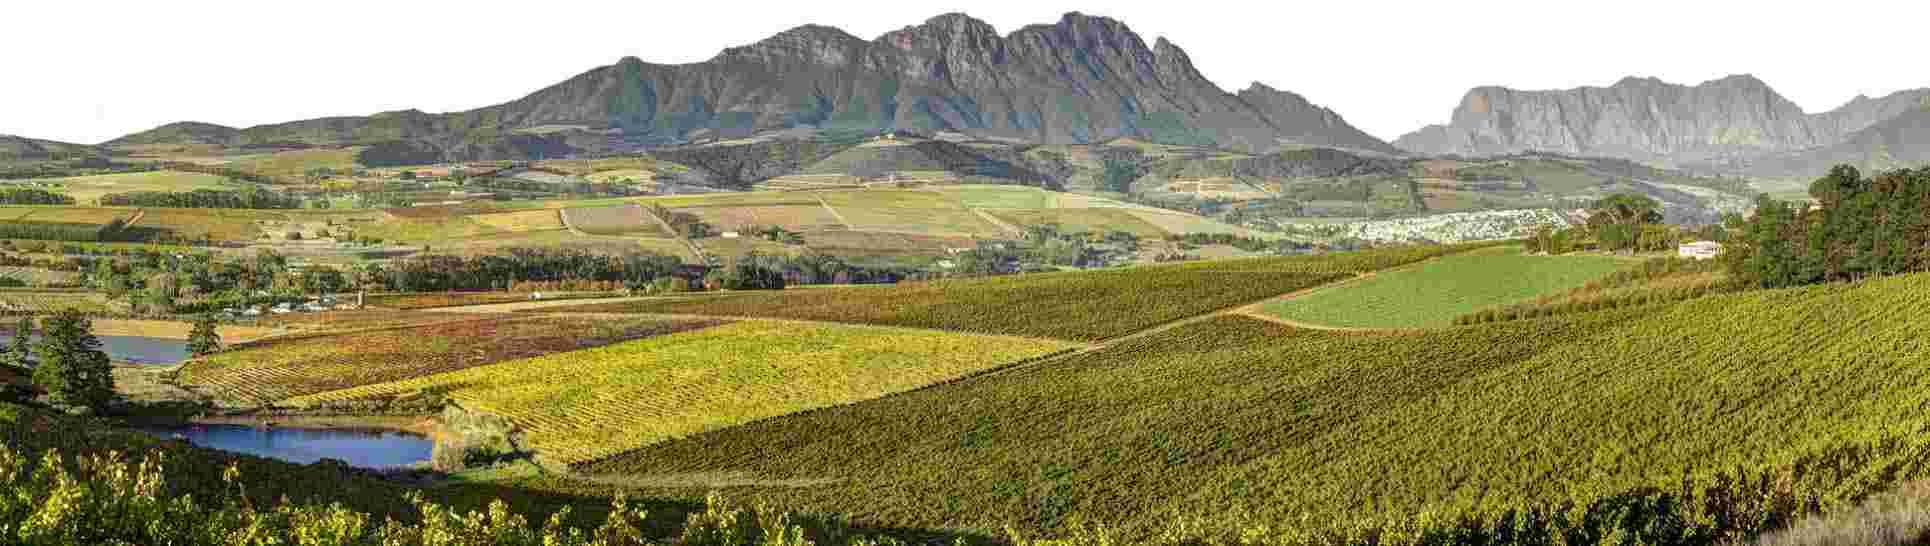 南非2015年份葡萄采收报告